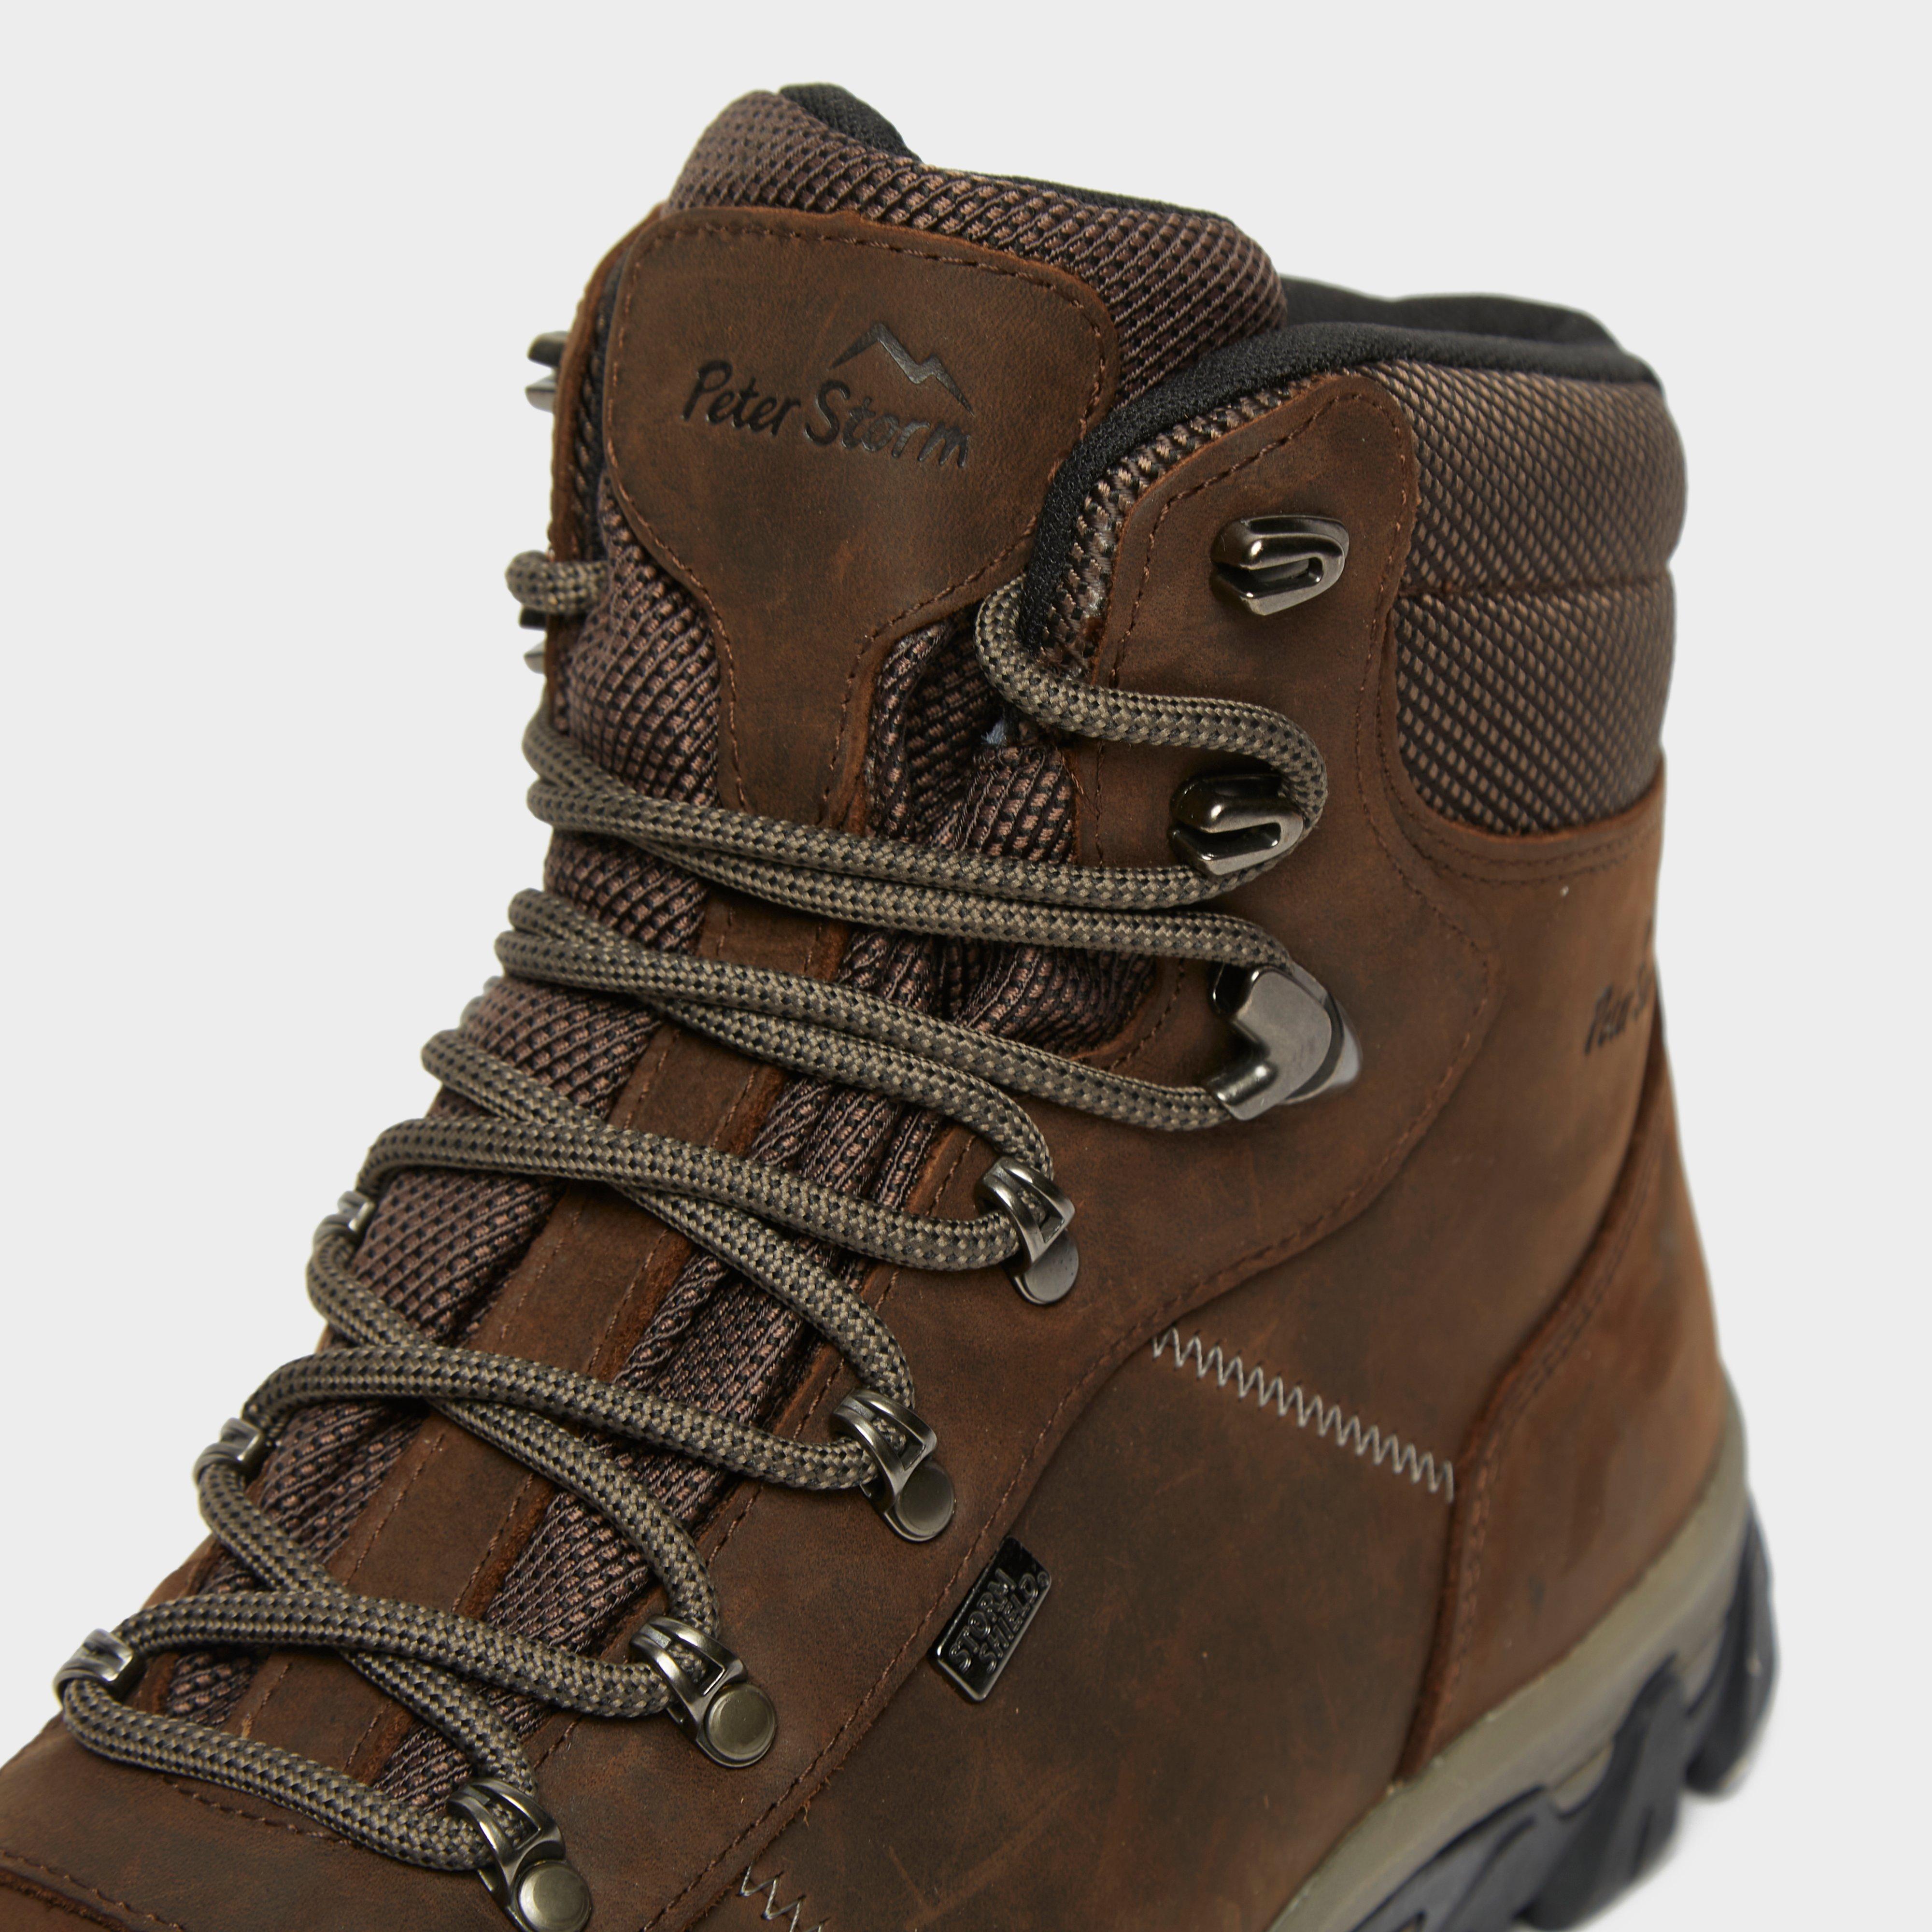 waterproof walking boots